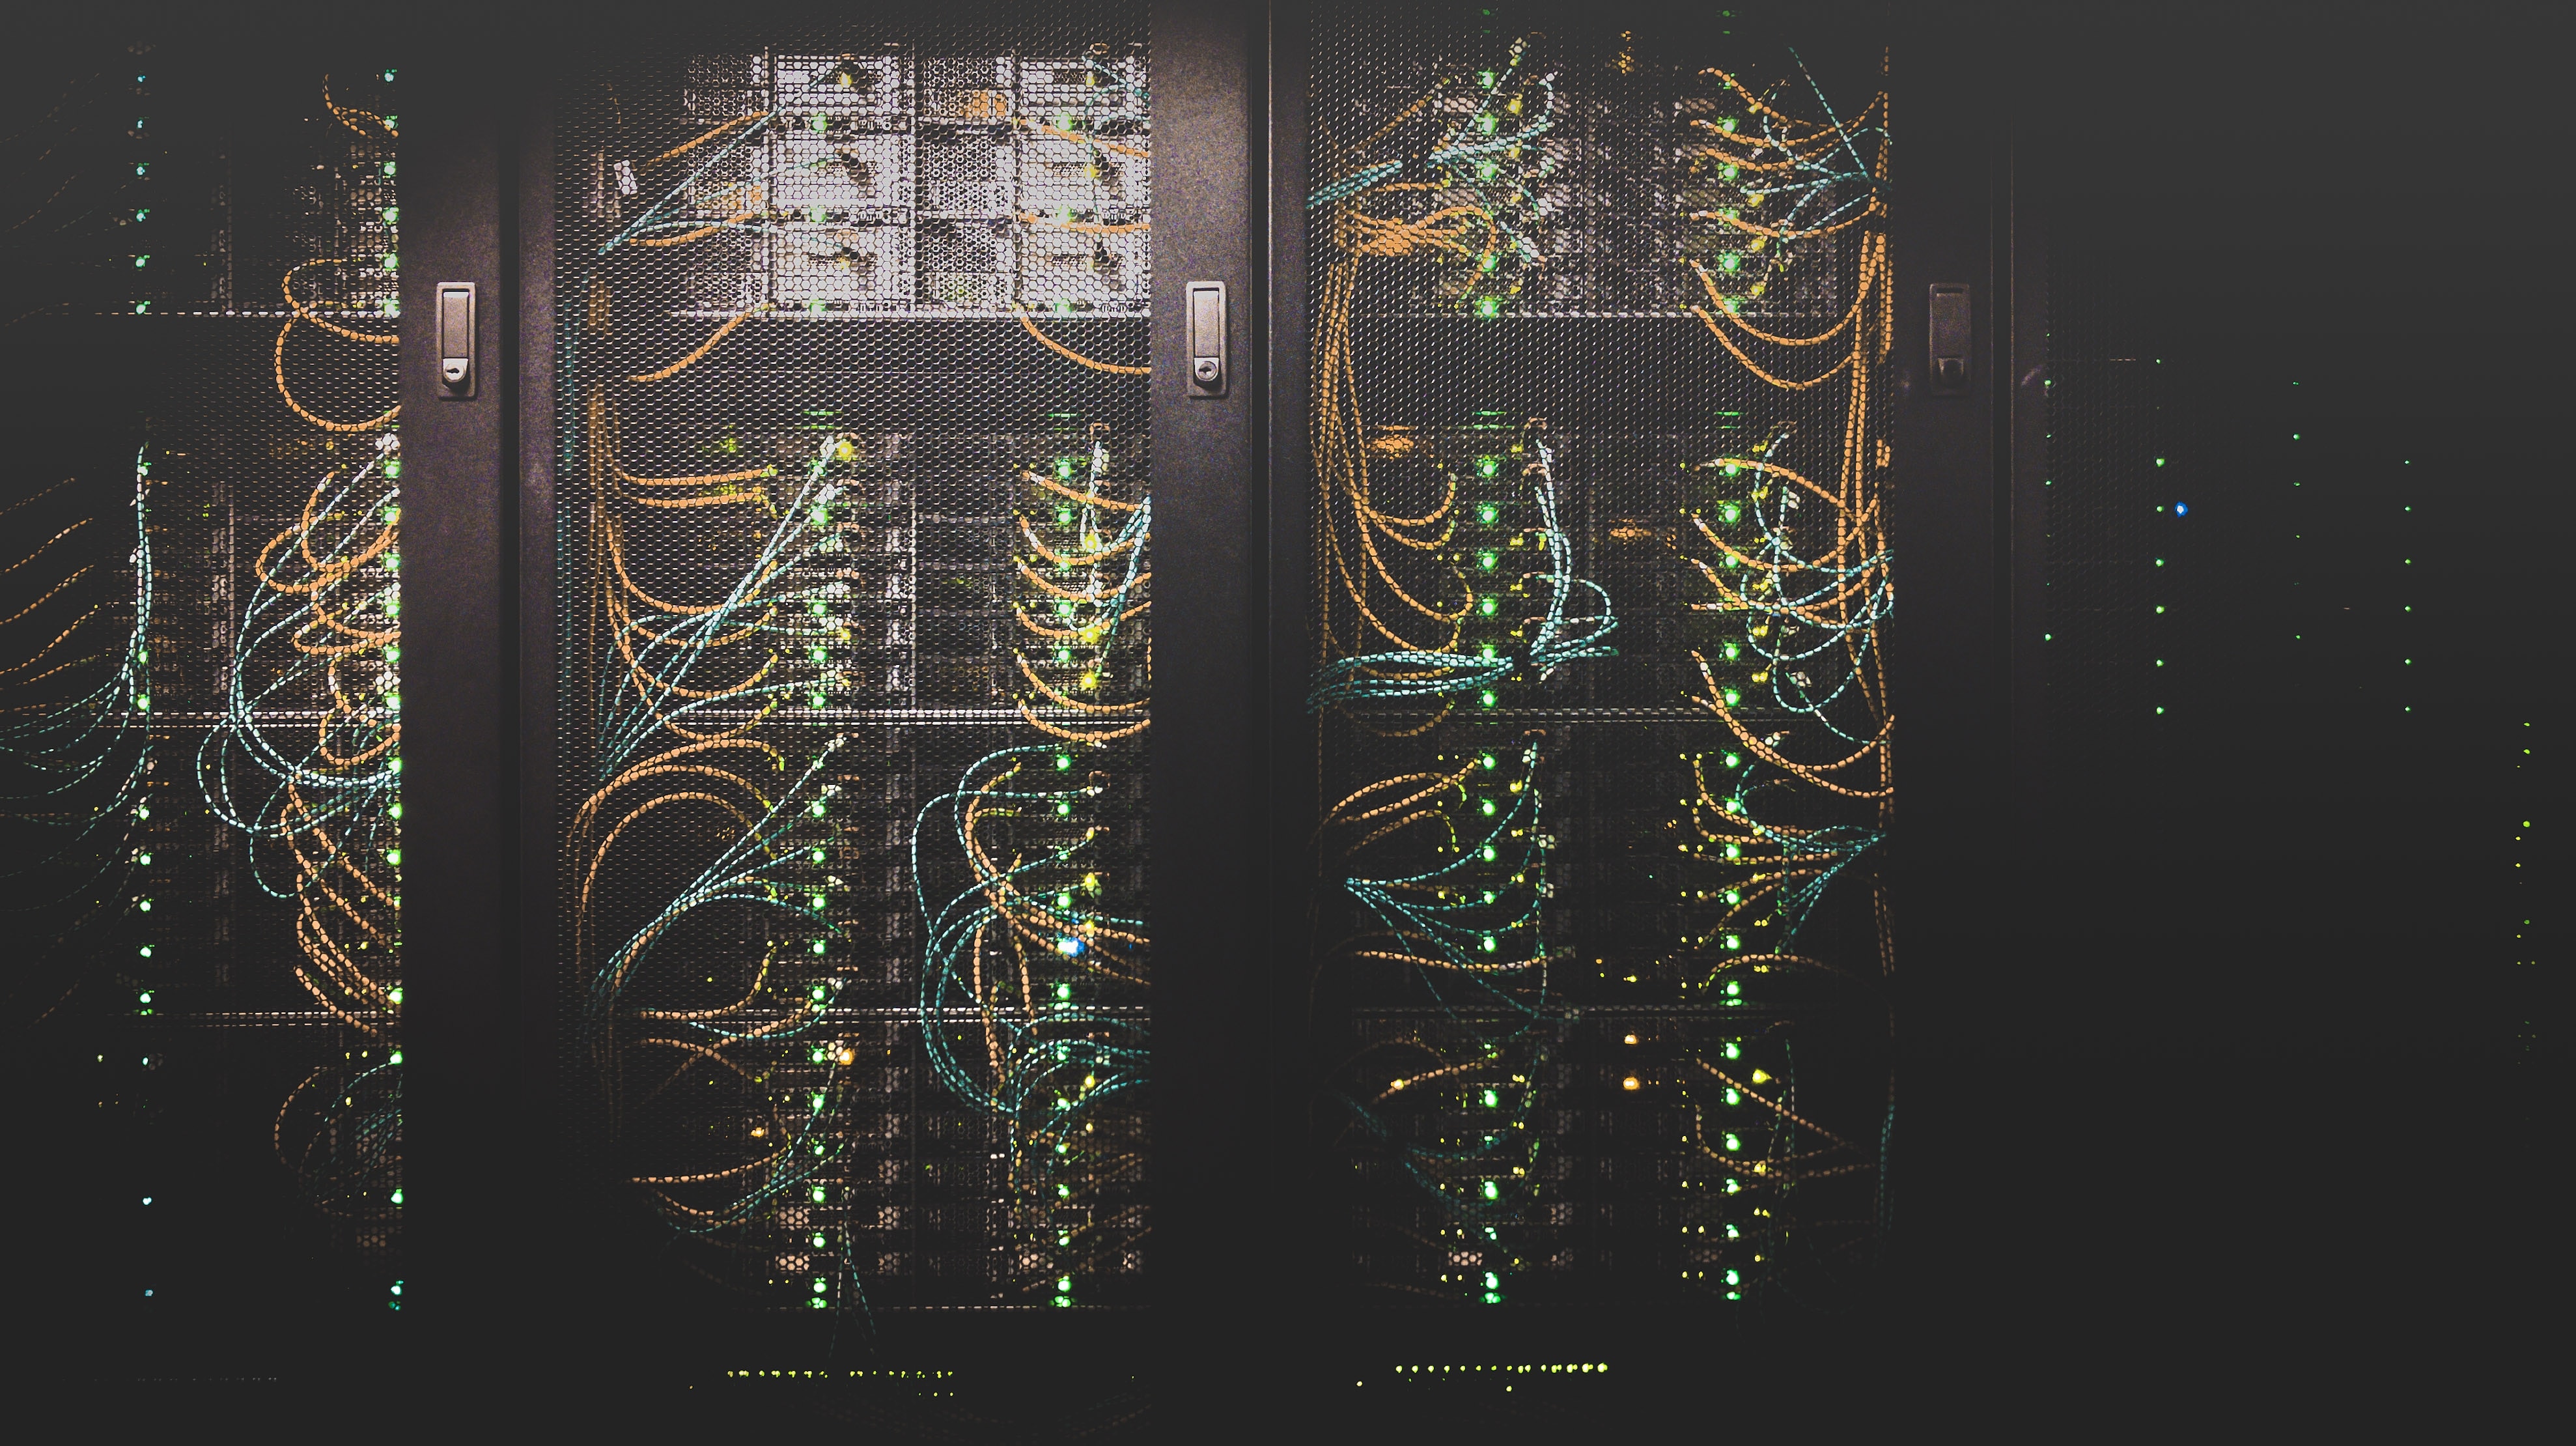 Server Rack - Photo by Taylor Vick on Unsplash